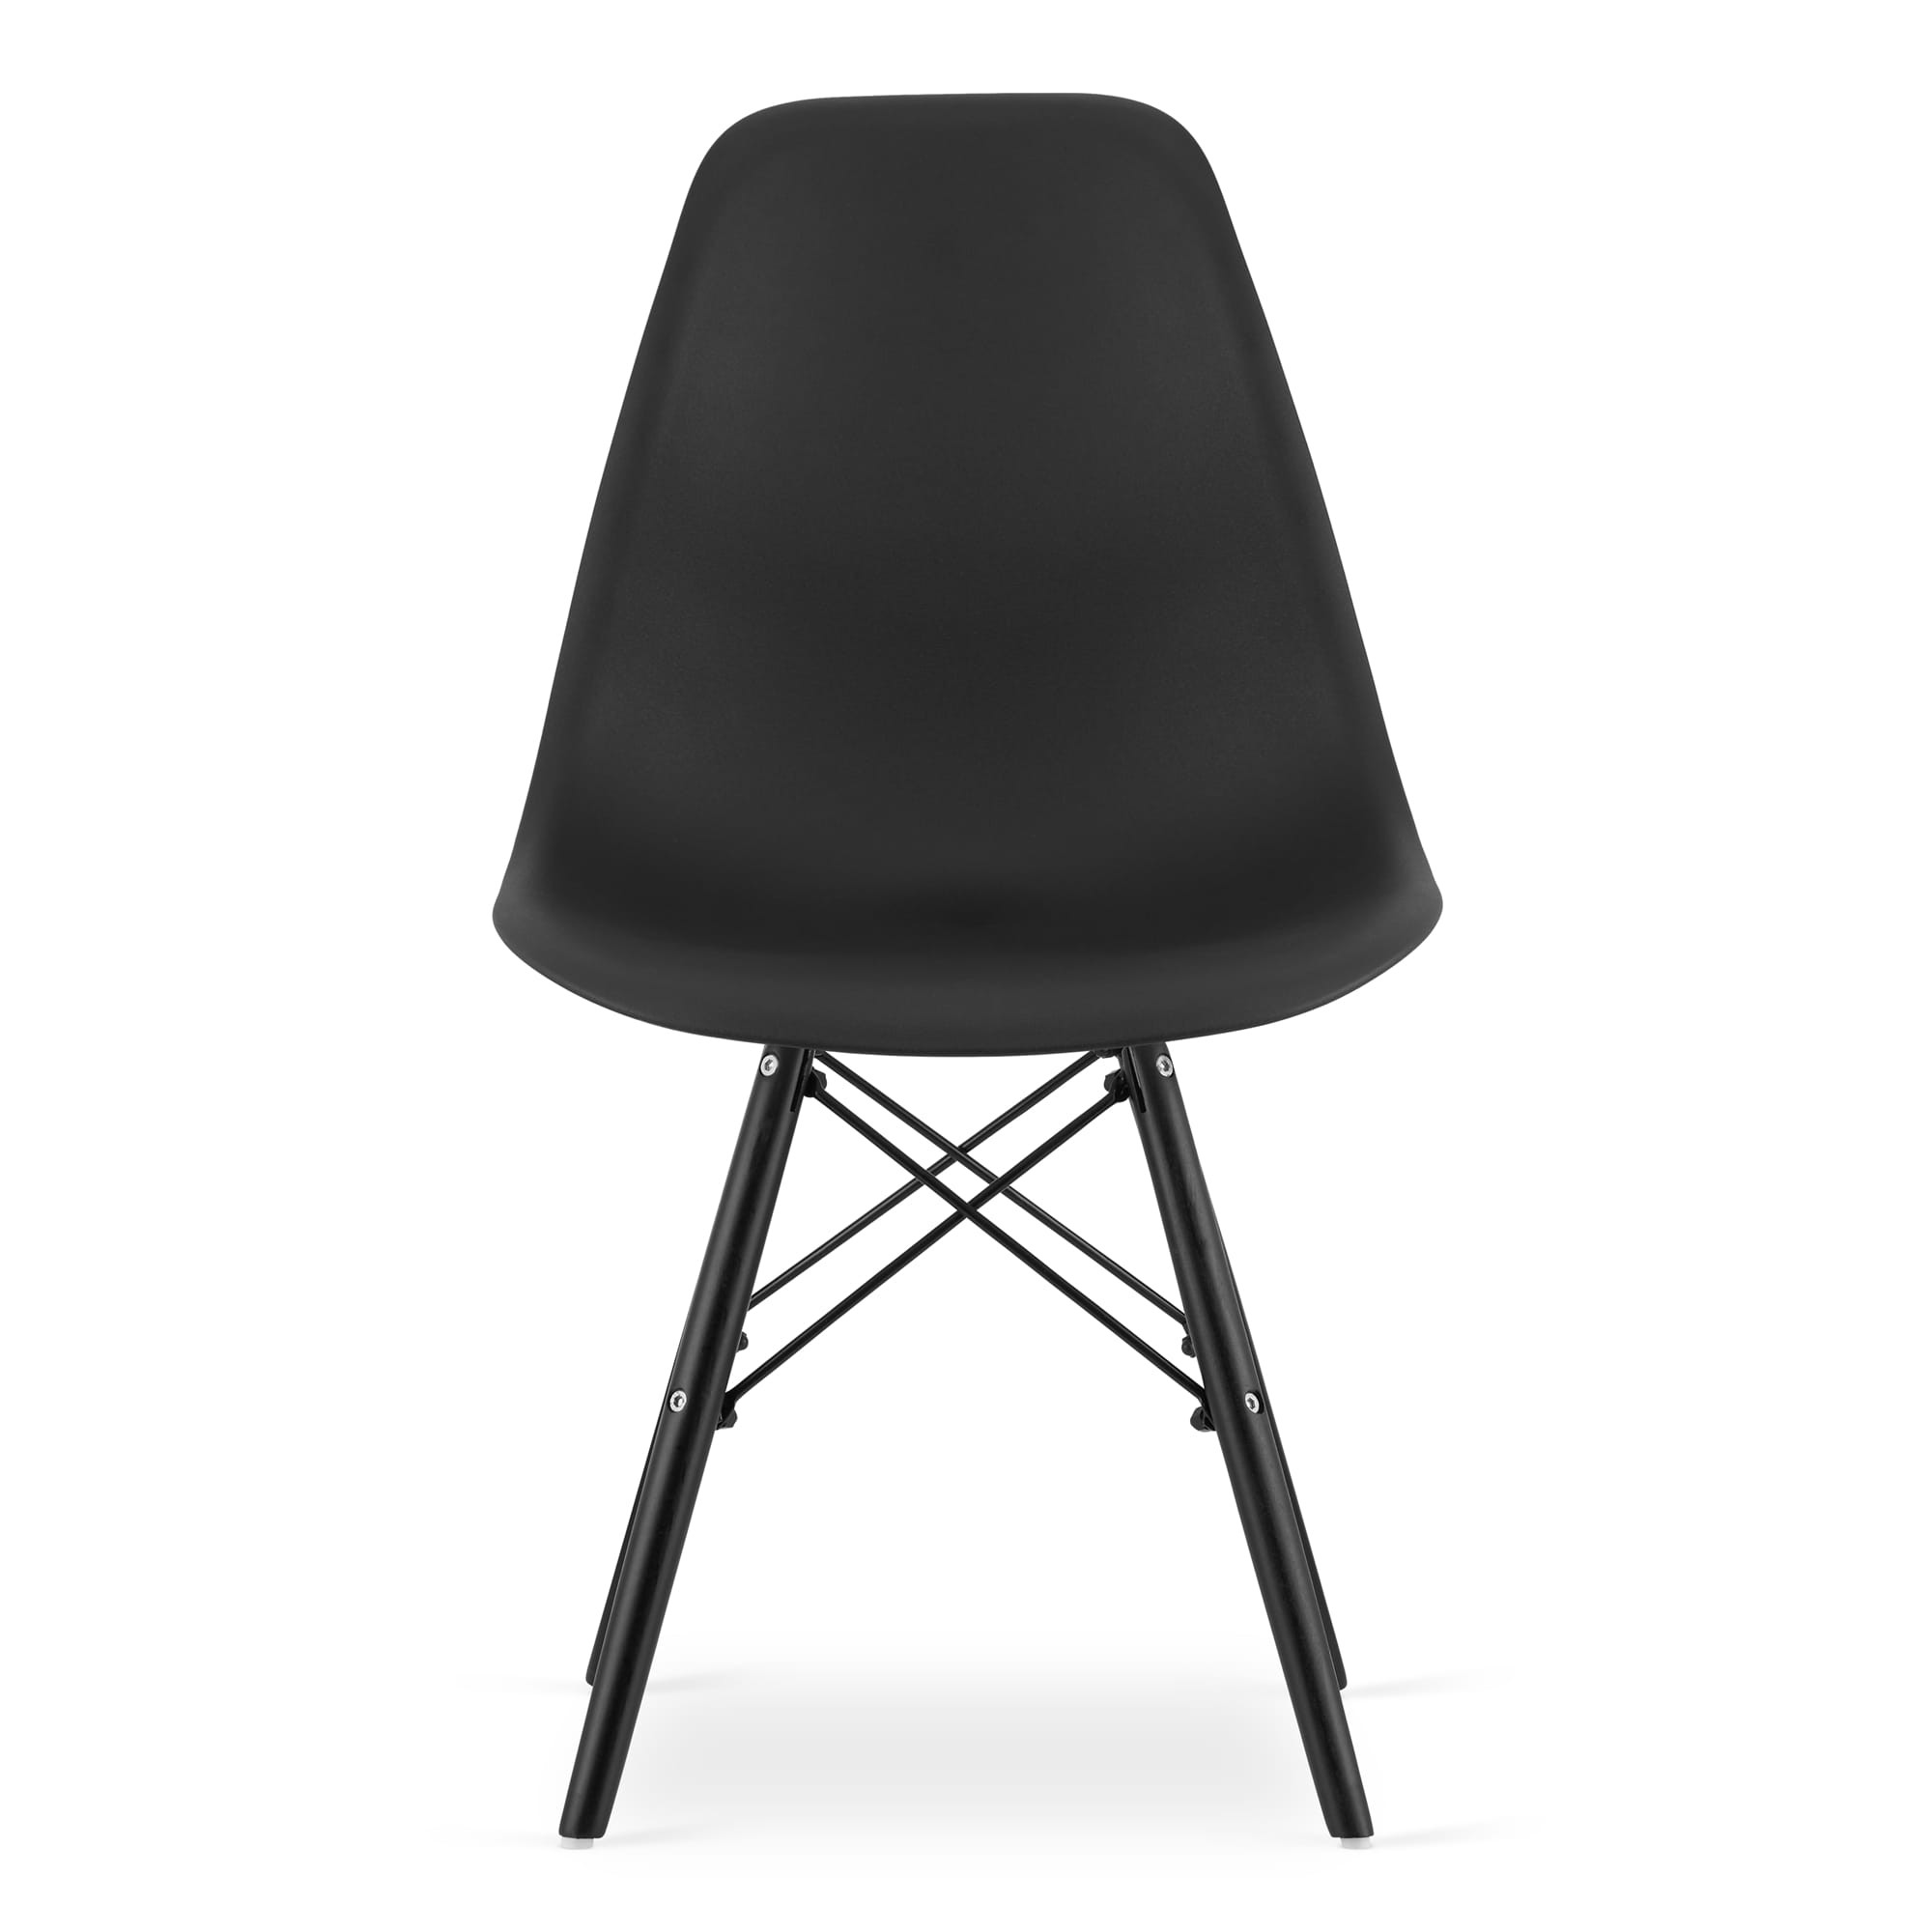 Set dvou jídelních židlí OSAKA černé (černé nohy) 2ks